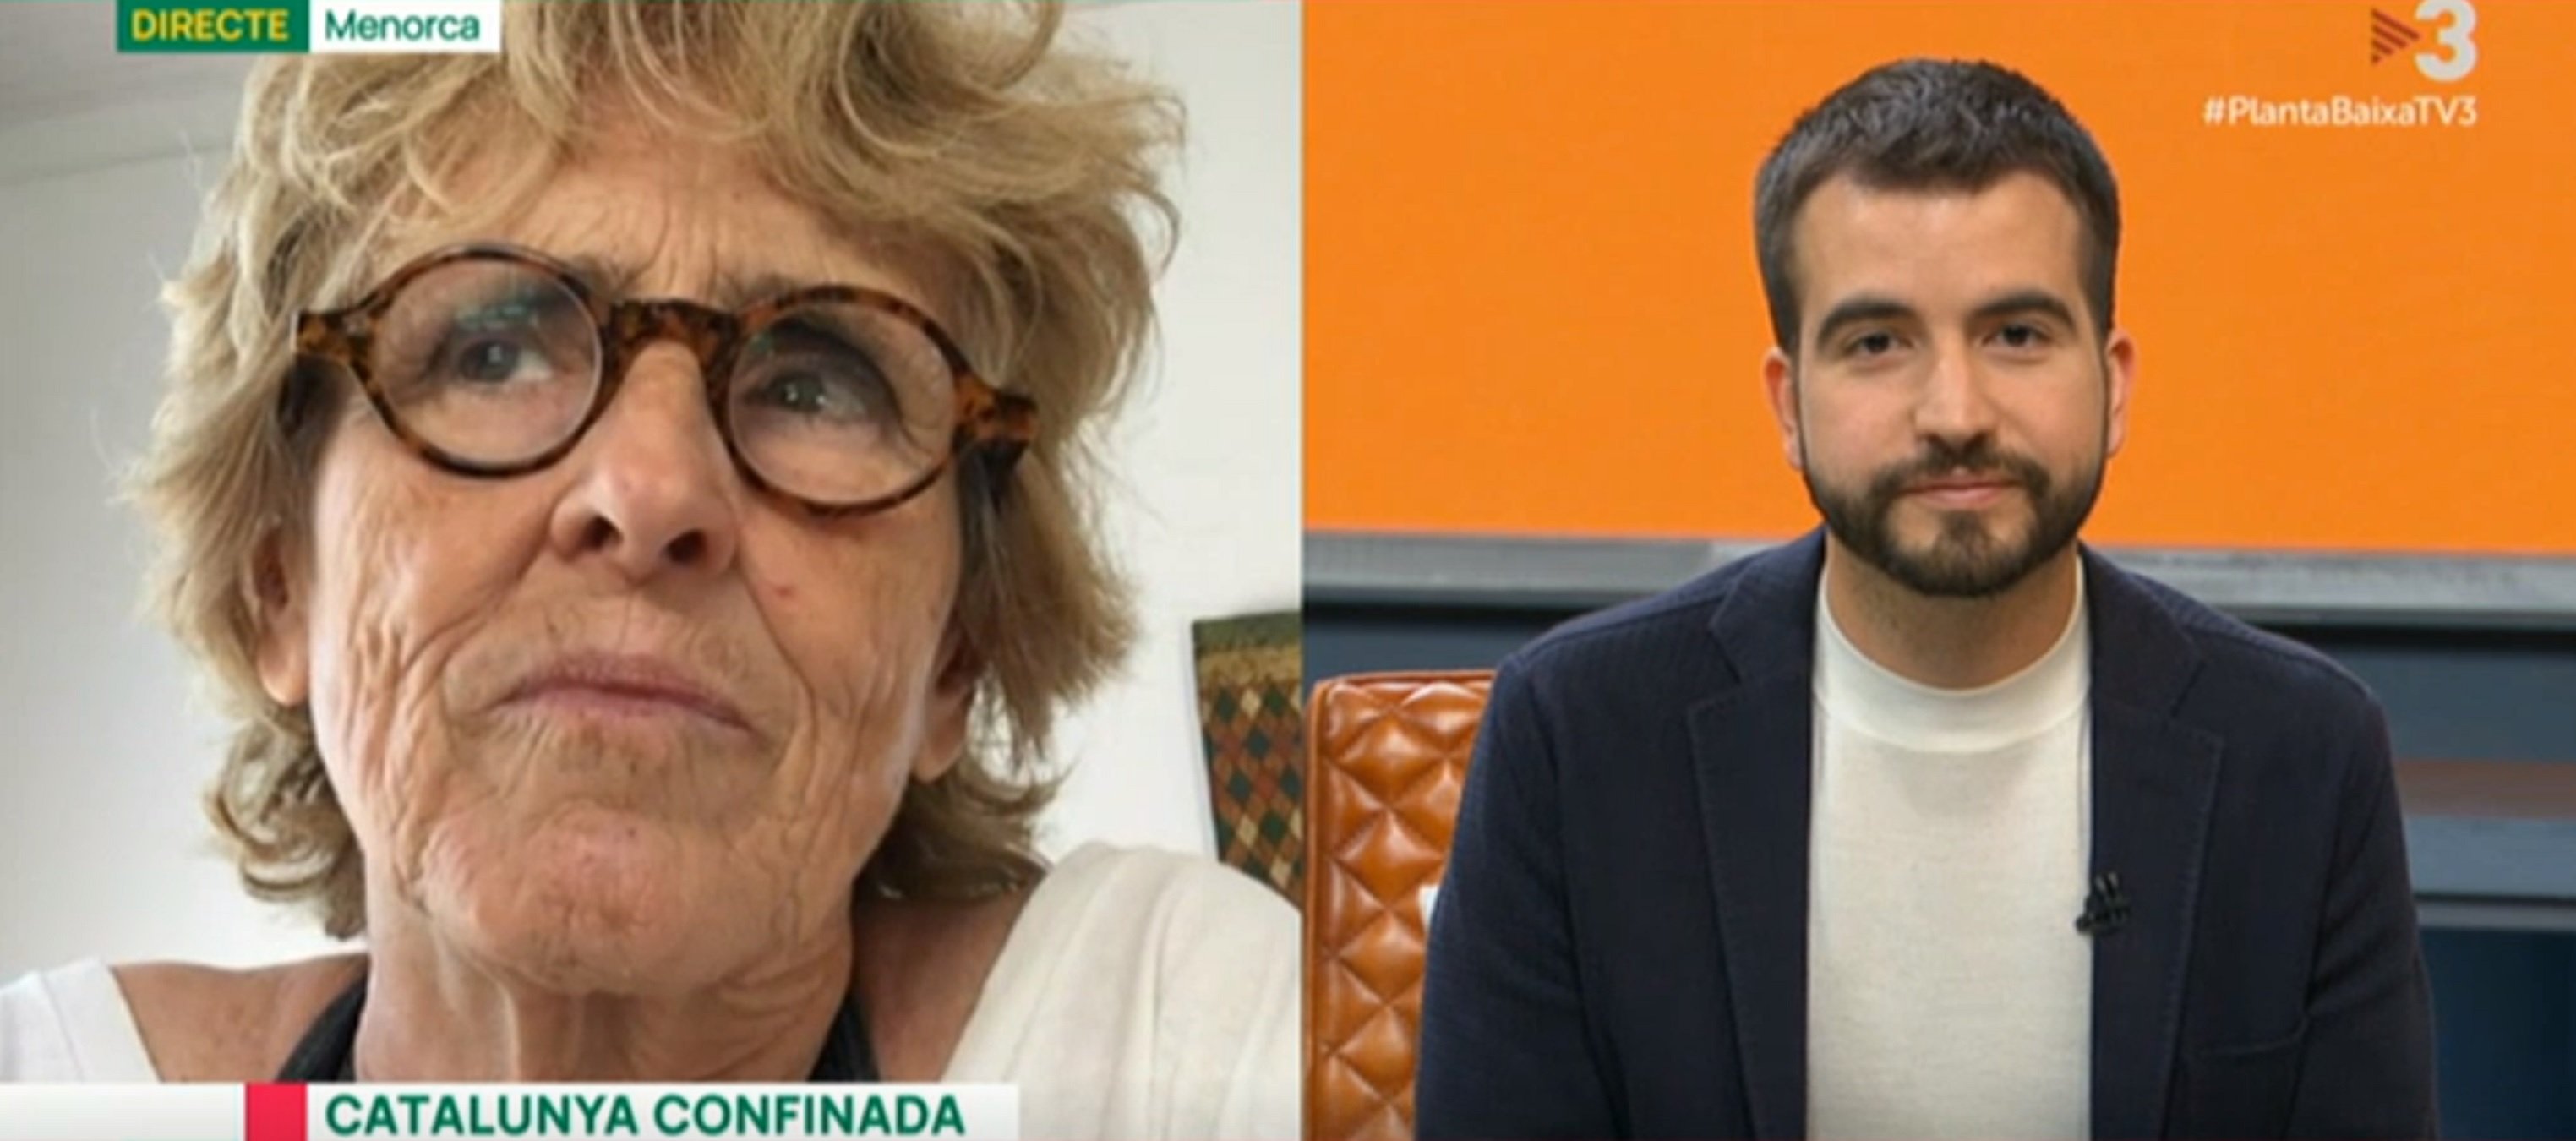 Zasca de Mercedes Milá a Ustrell: "Qué manía de TV3 que Cataluña no es España"